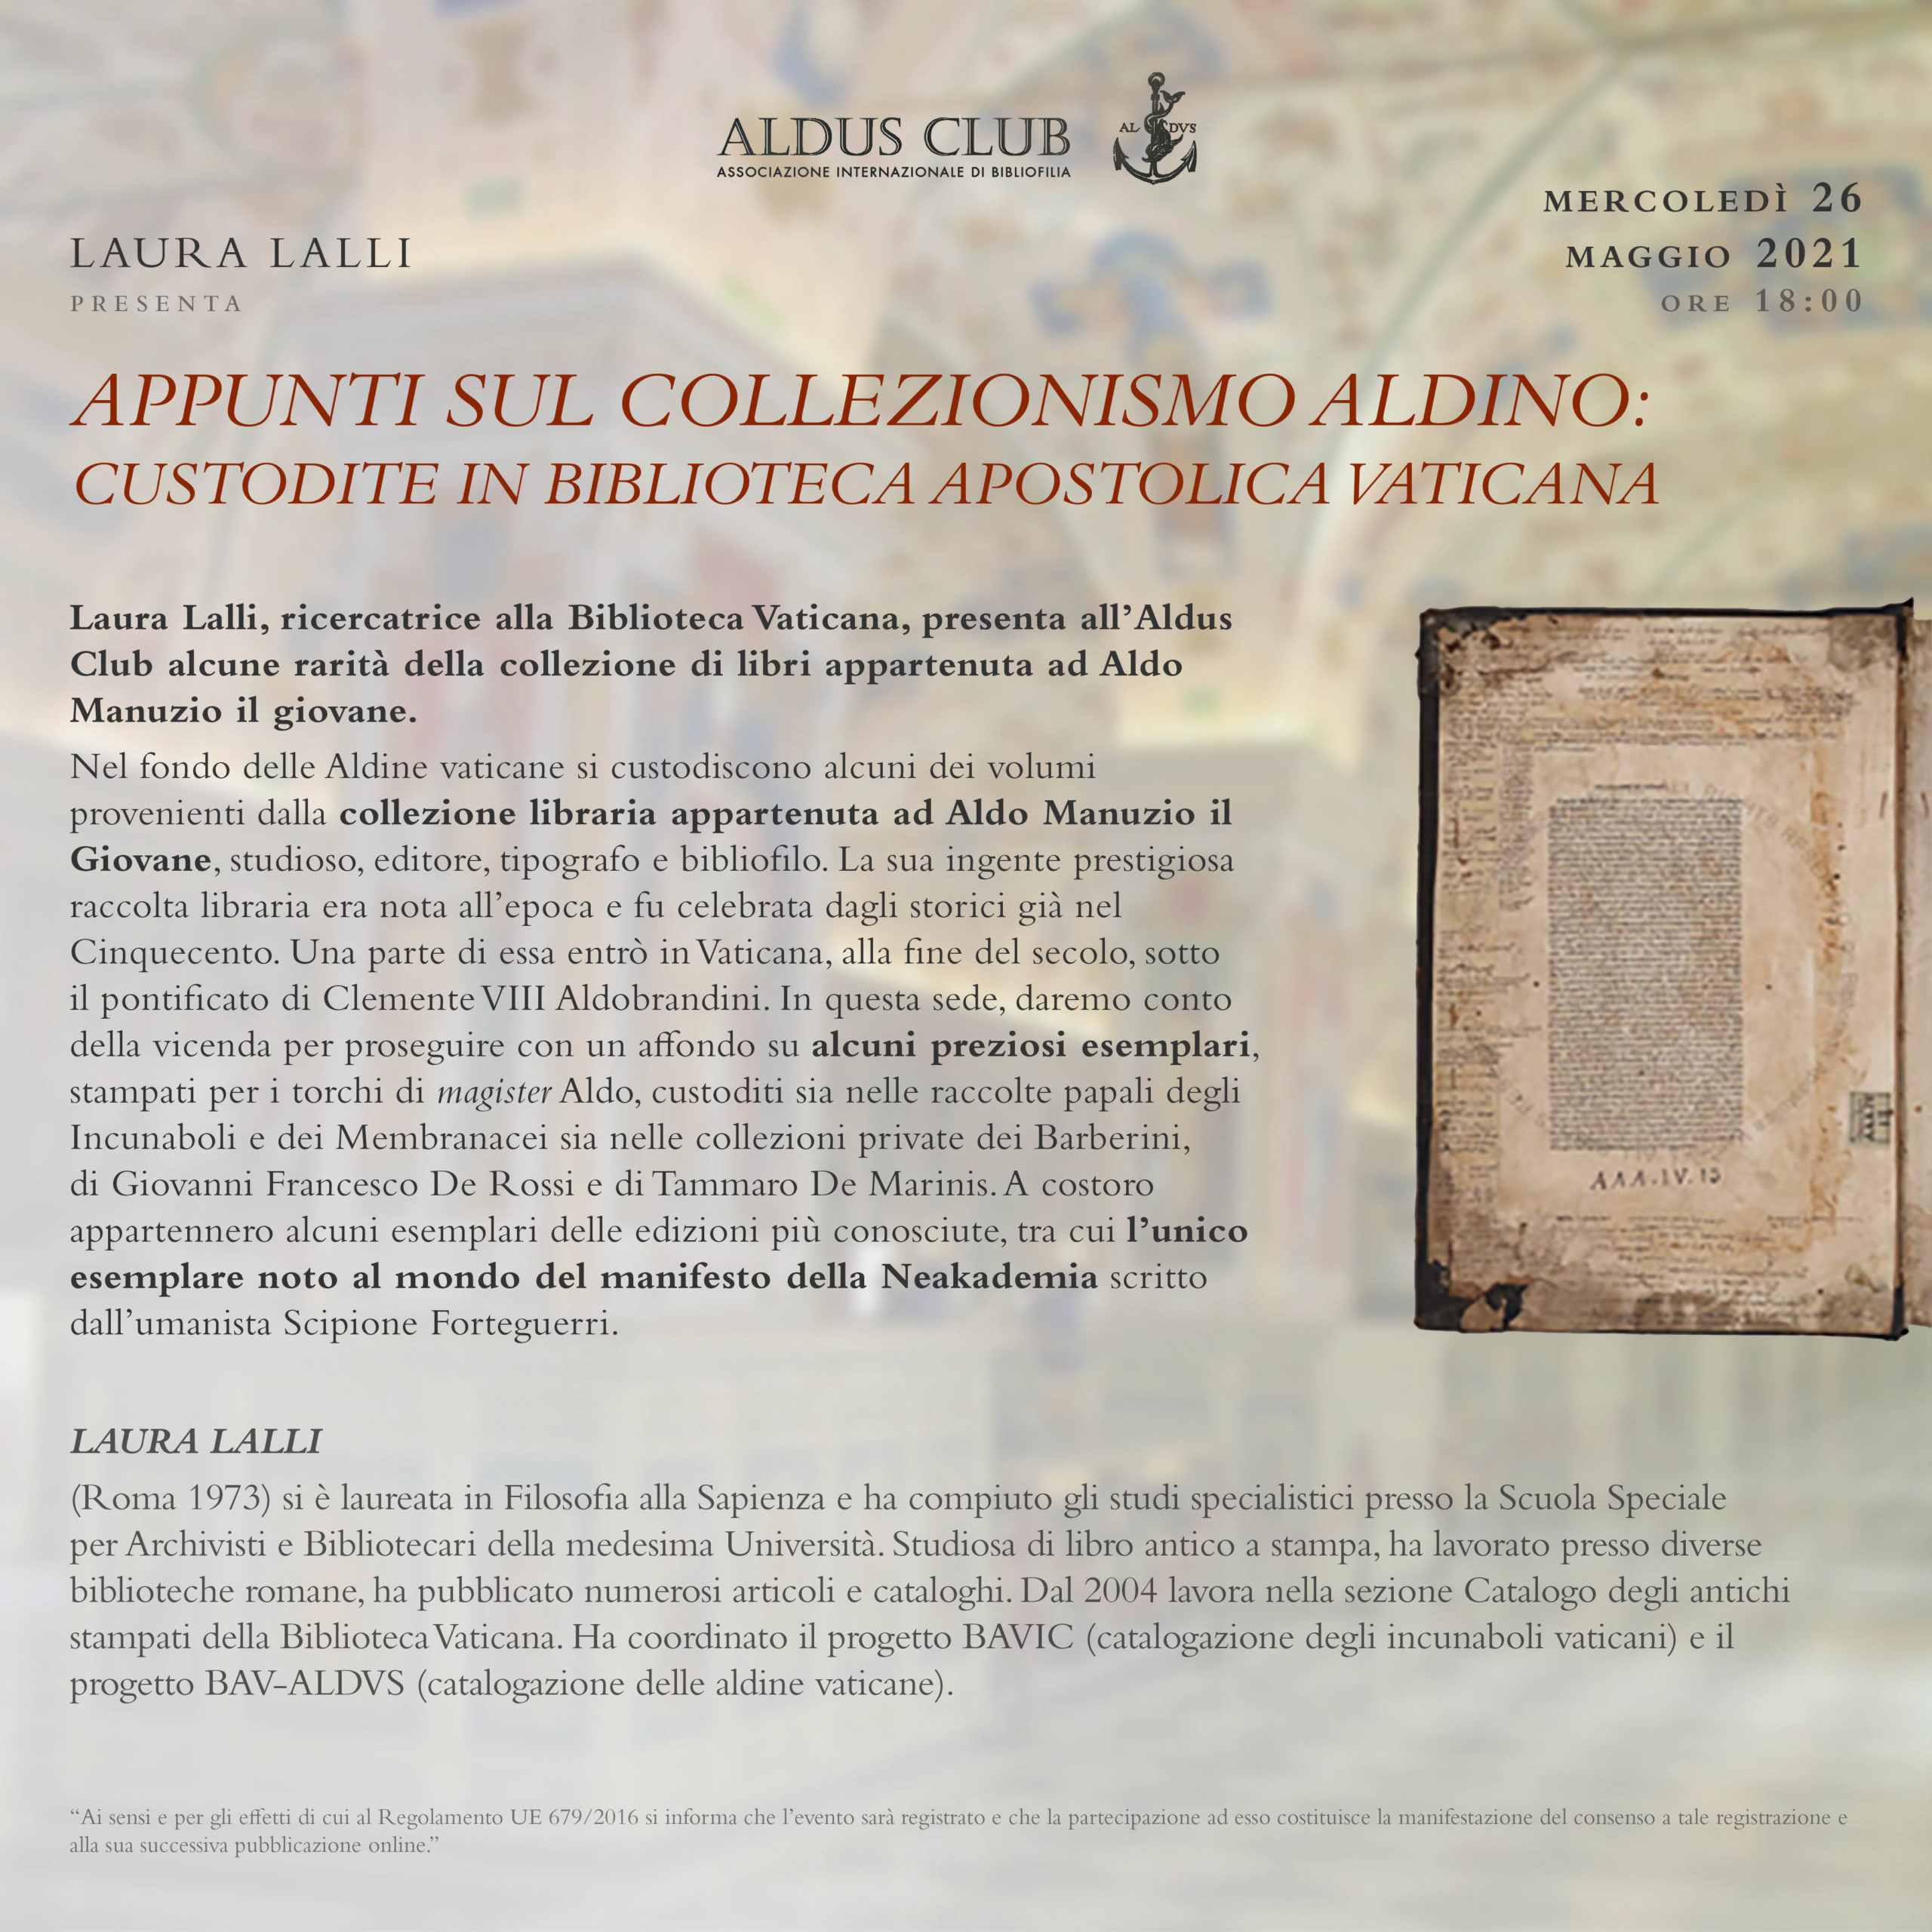 Appunti sul collezionismo Aldino: preziose testimonianze custodite in Biblioteca Apostolica Vaticana.